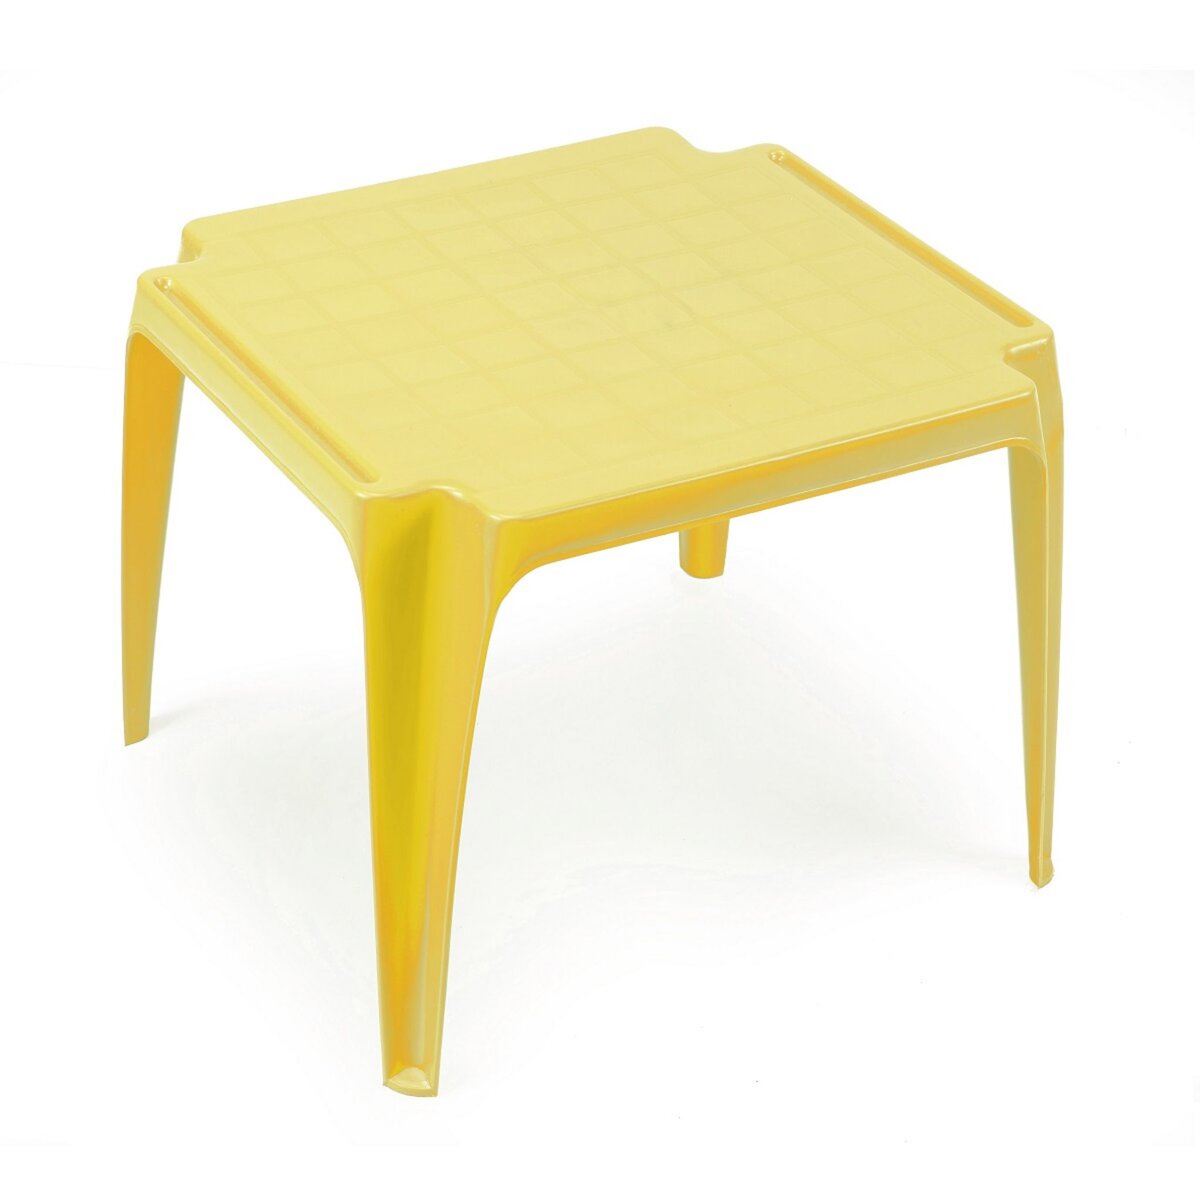 Table de jardin enfant jaune